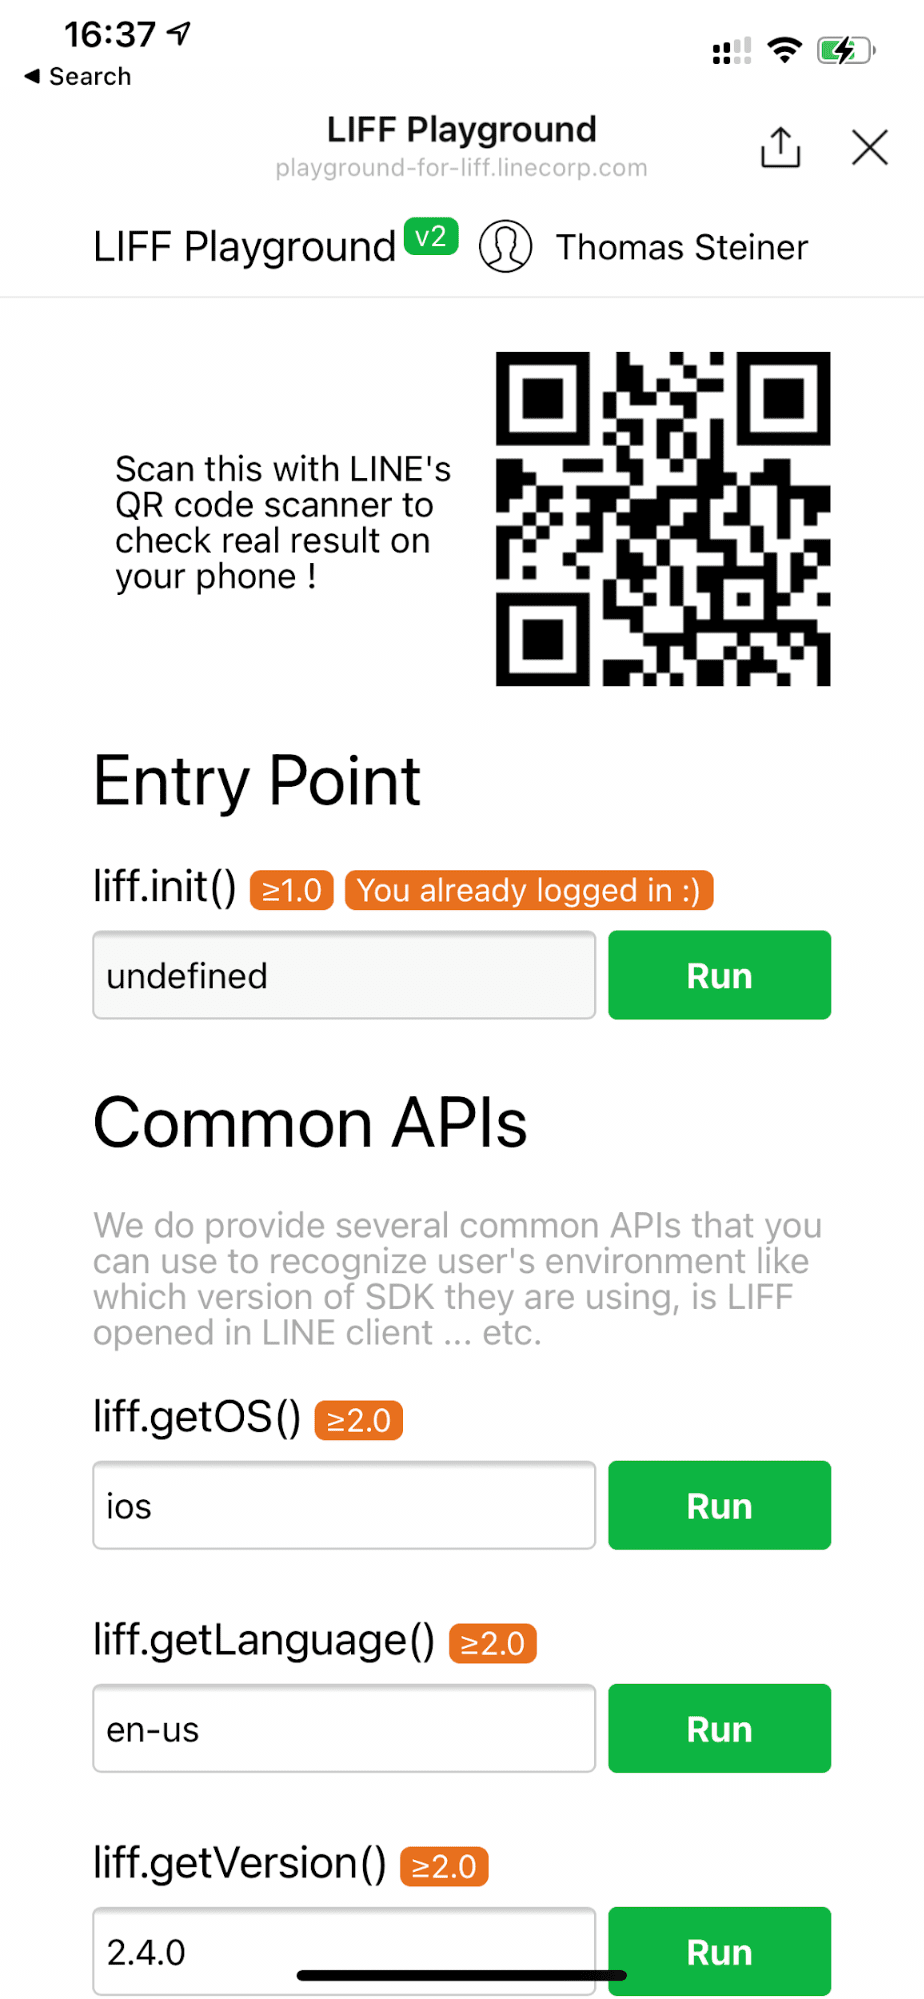 Ứng dụng minh hoạ LINE Playground chạy trên một thiết bị iOS cho thấy &quot;liff.getOS()&quot; trả về &quot;ios&quot;.